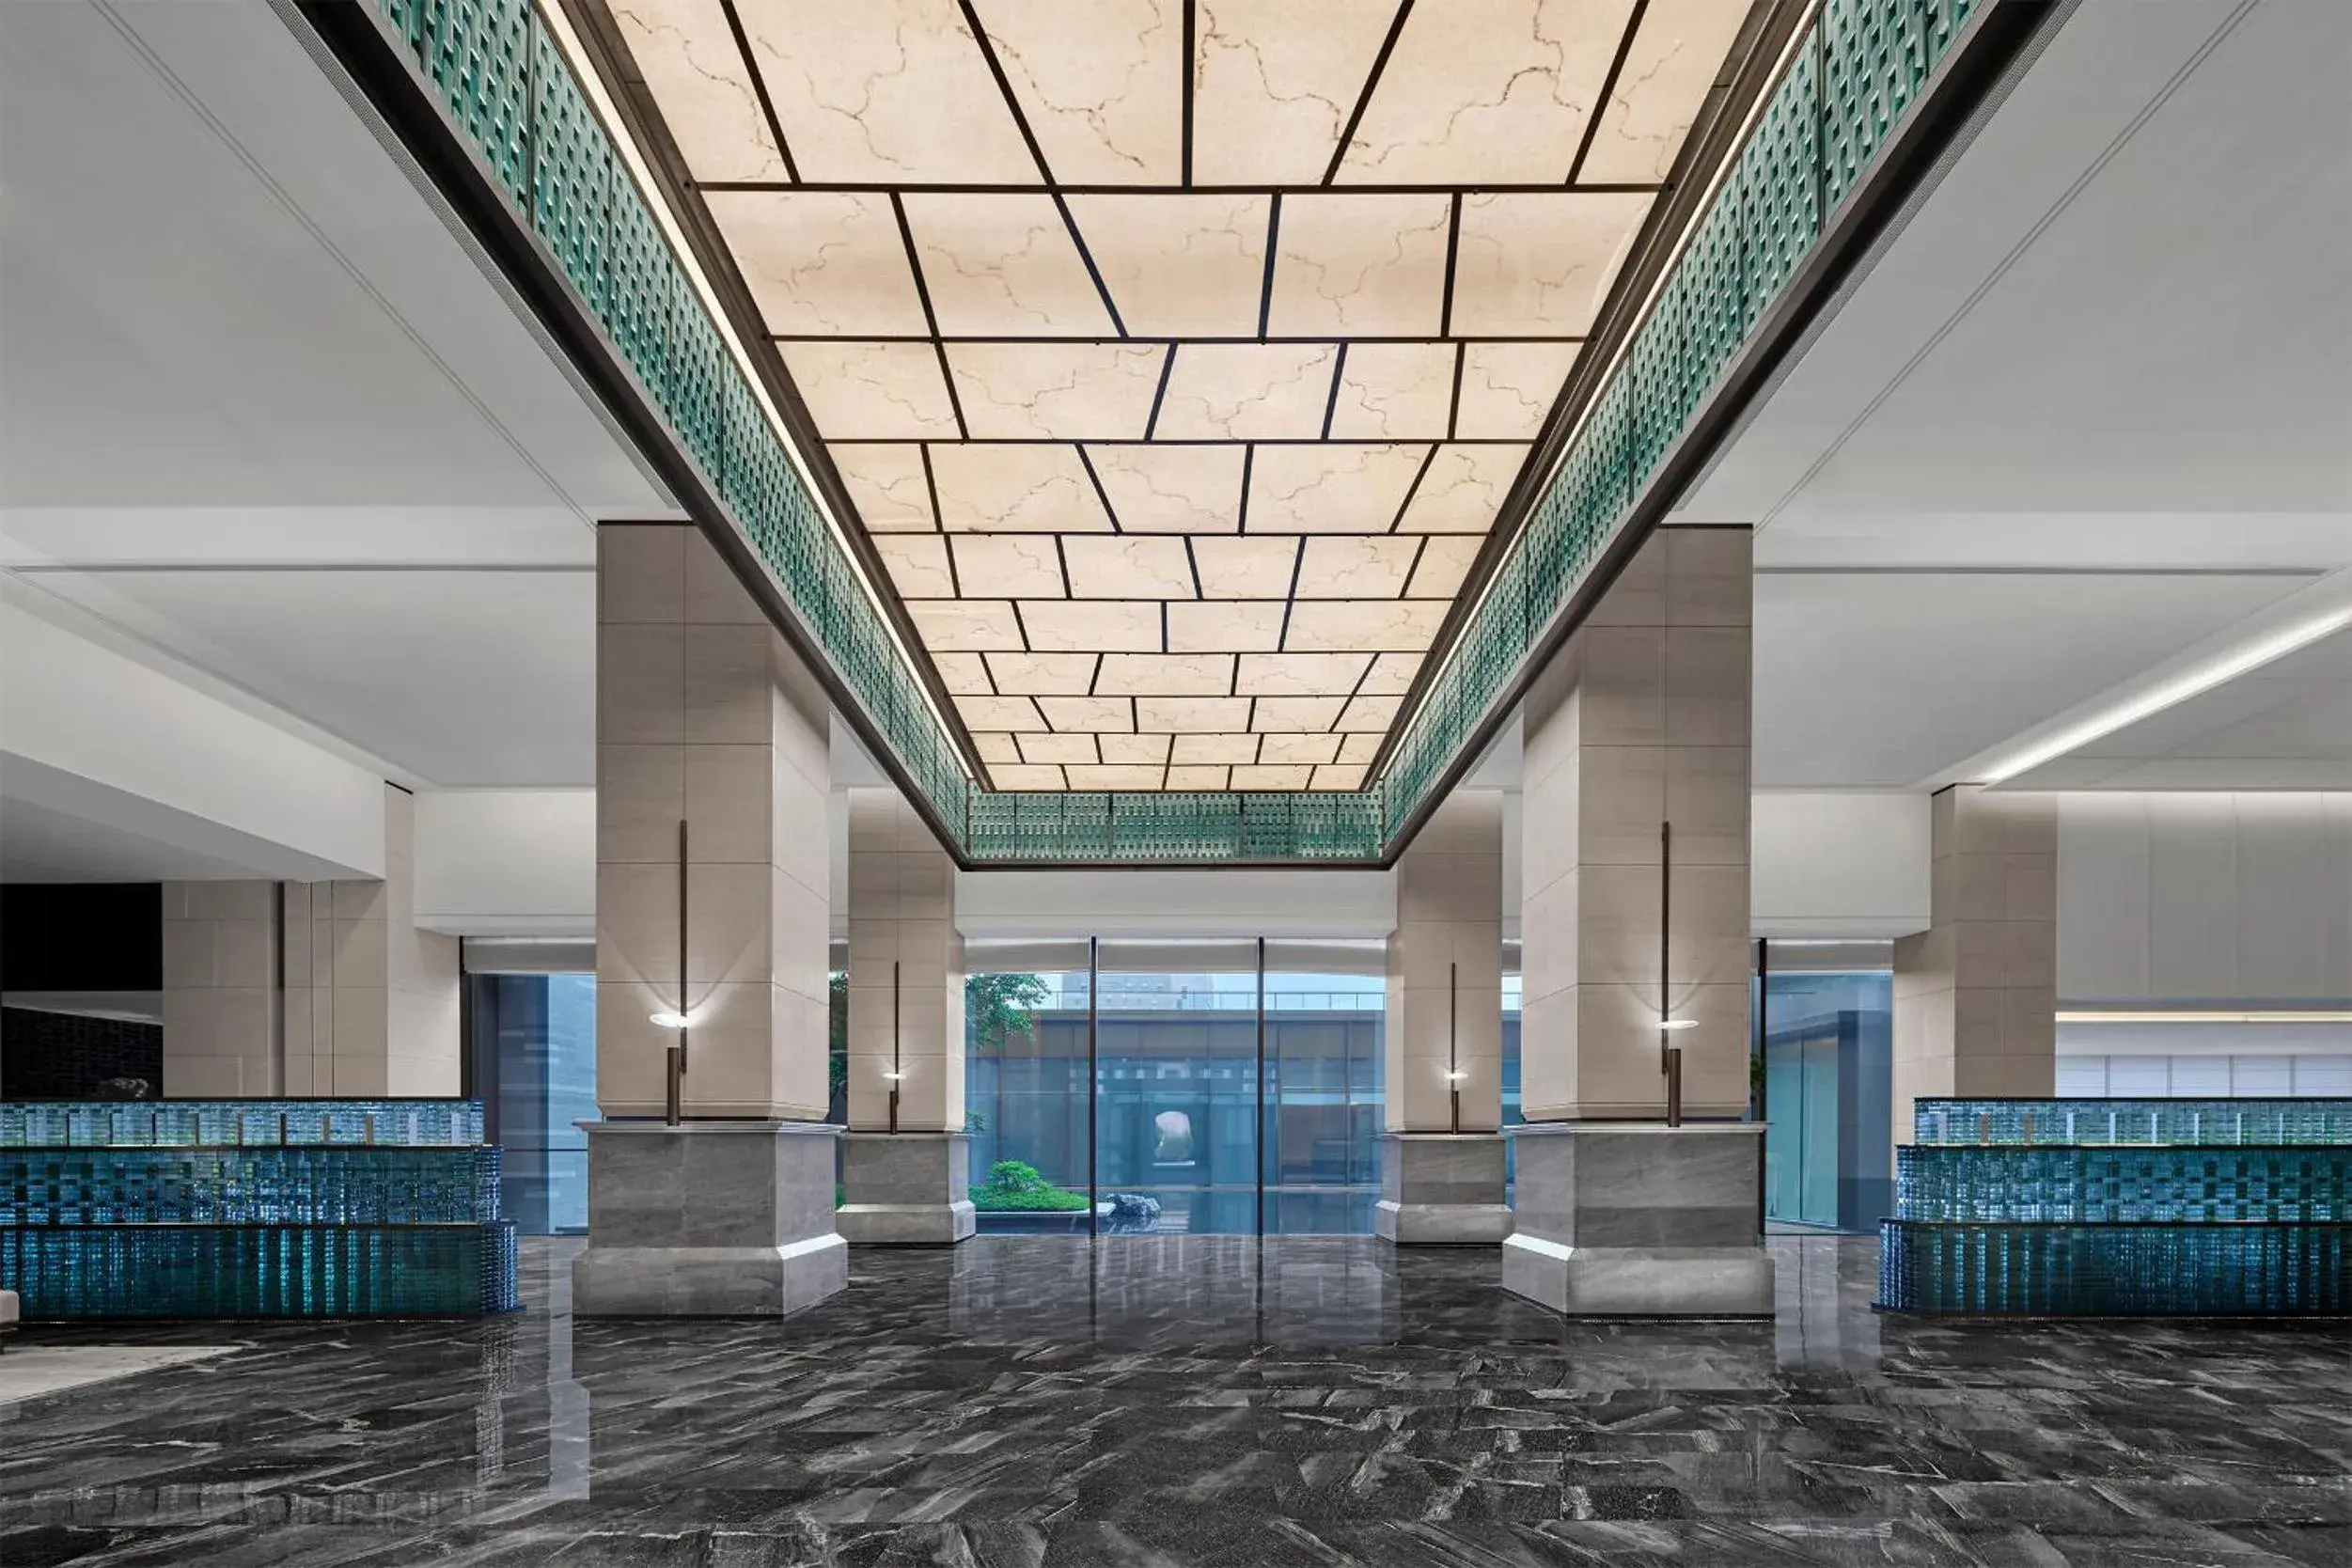 Lobby or reception in Guangzhou Marriott Hotel Baiyun